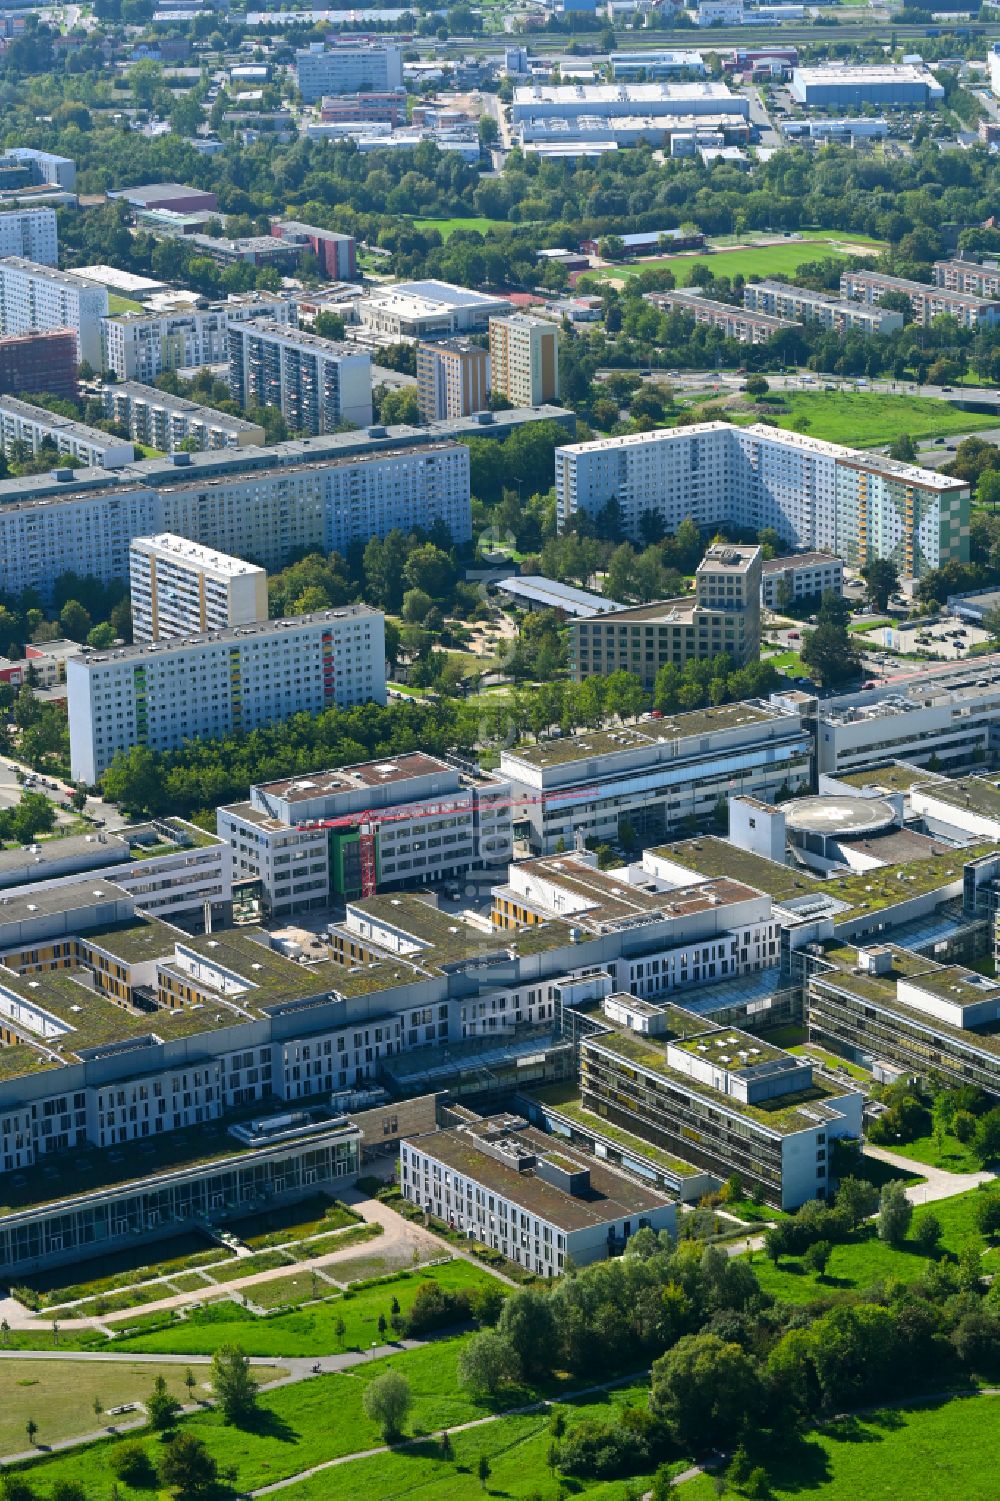 Luftaufnahme Jena - Klinikgelände des Krankenhauses Universitätsklinikum in Jena im Bundesland Thüringen, Deutschland